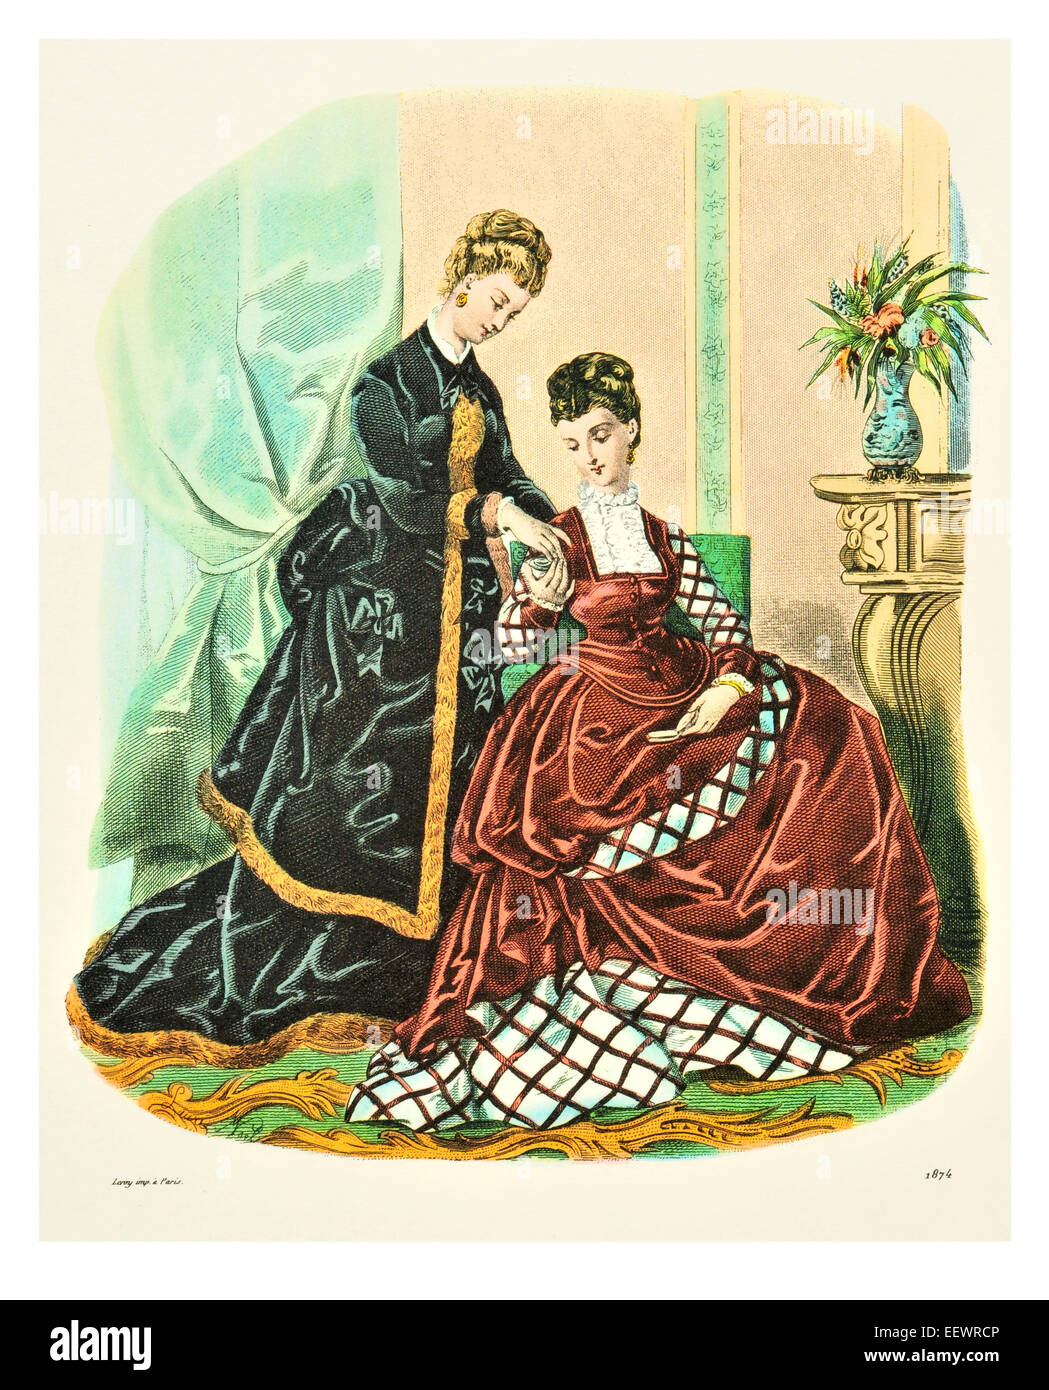 La Mode Illustree 1874 trajes de época victoriana moda vestido vestidos vestido falda velo cuff lujos tapa muselina bordado park Foto de stock